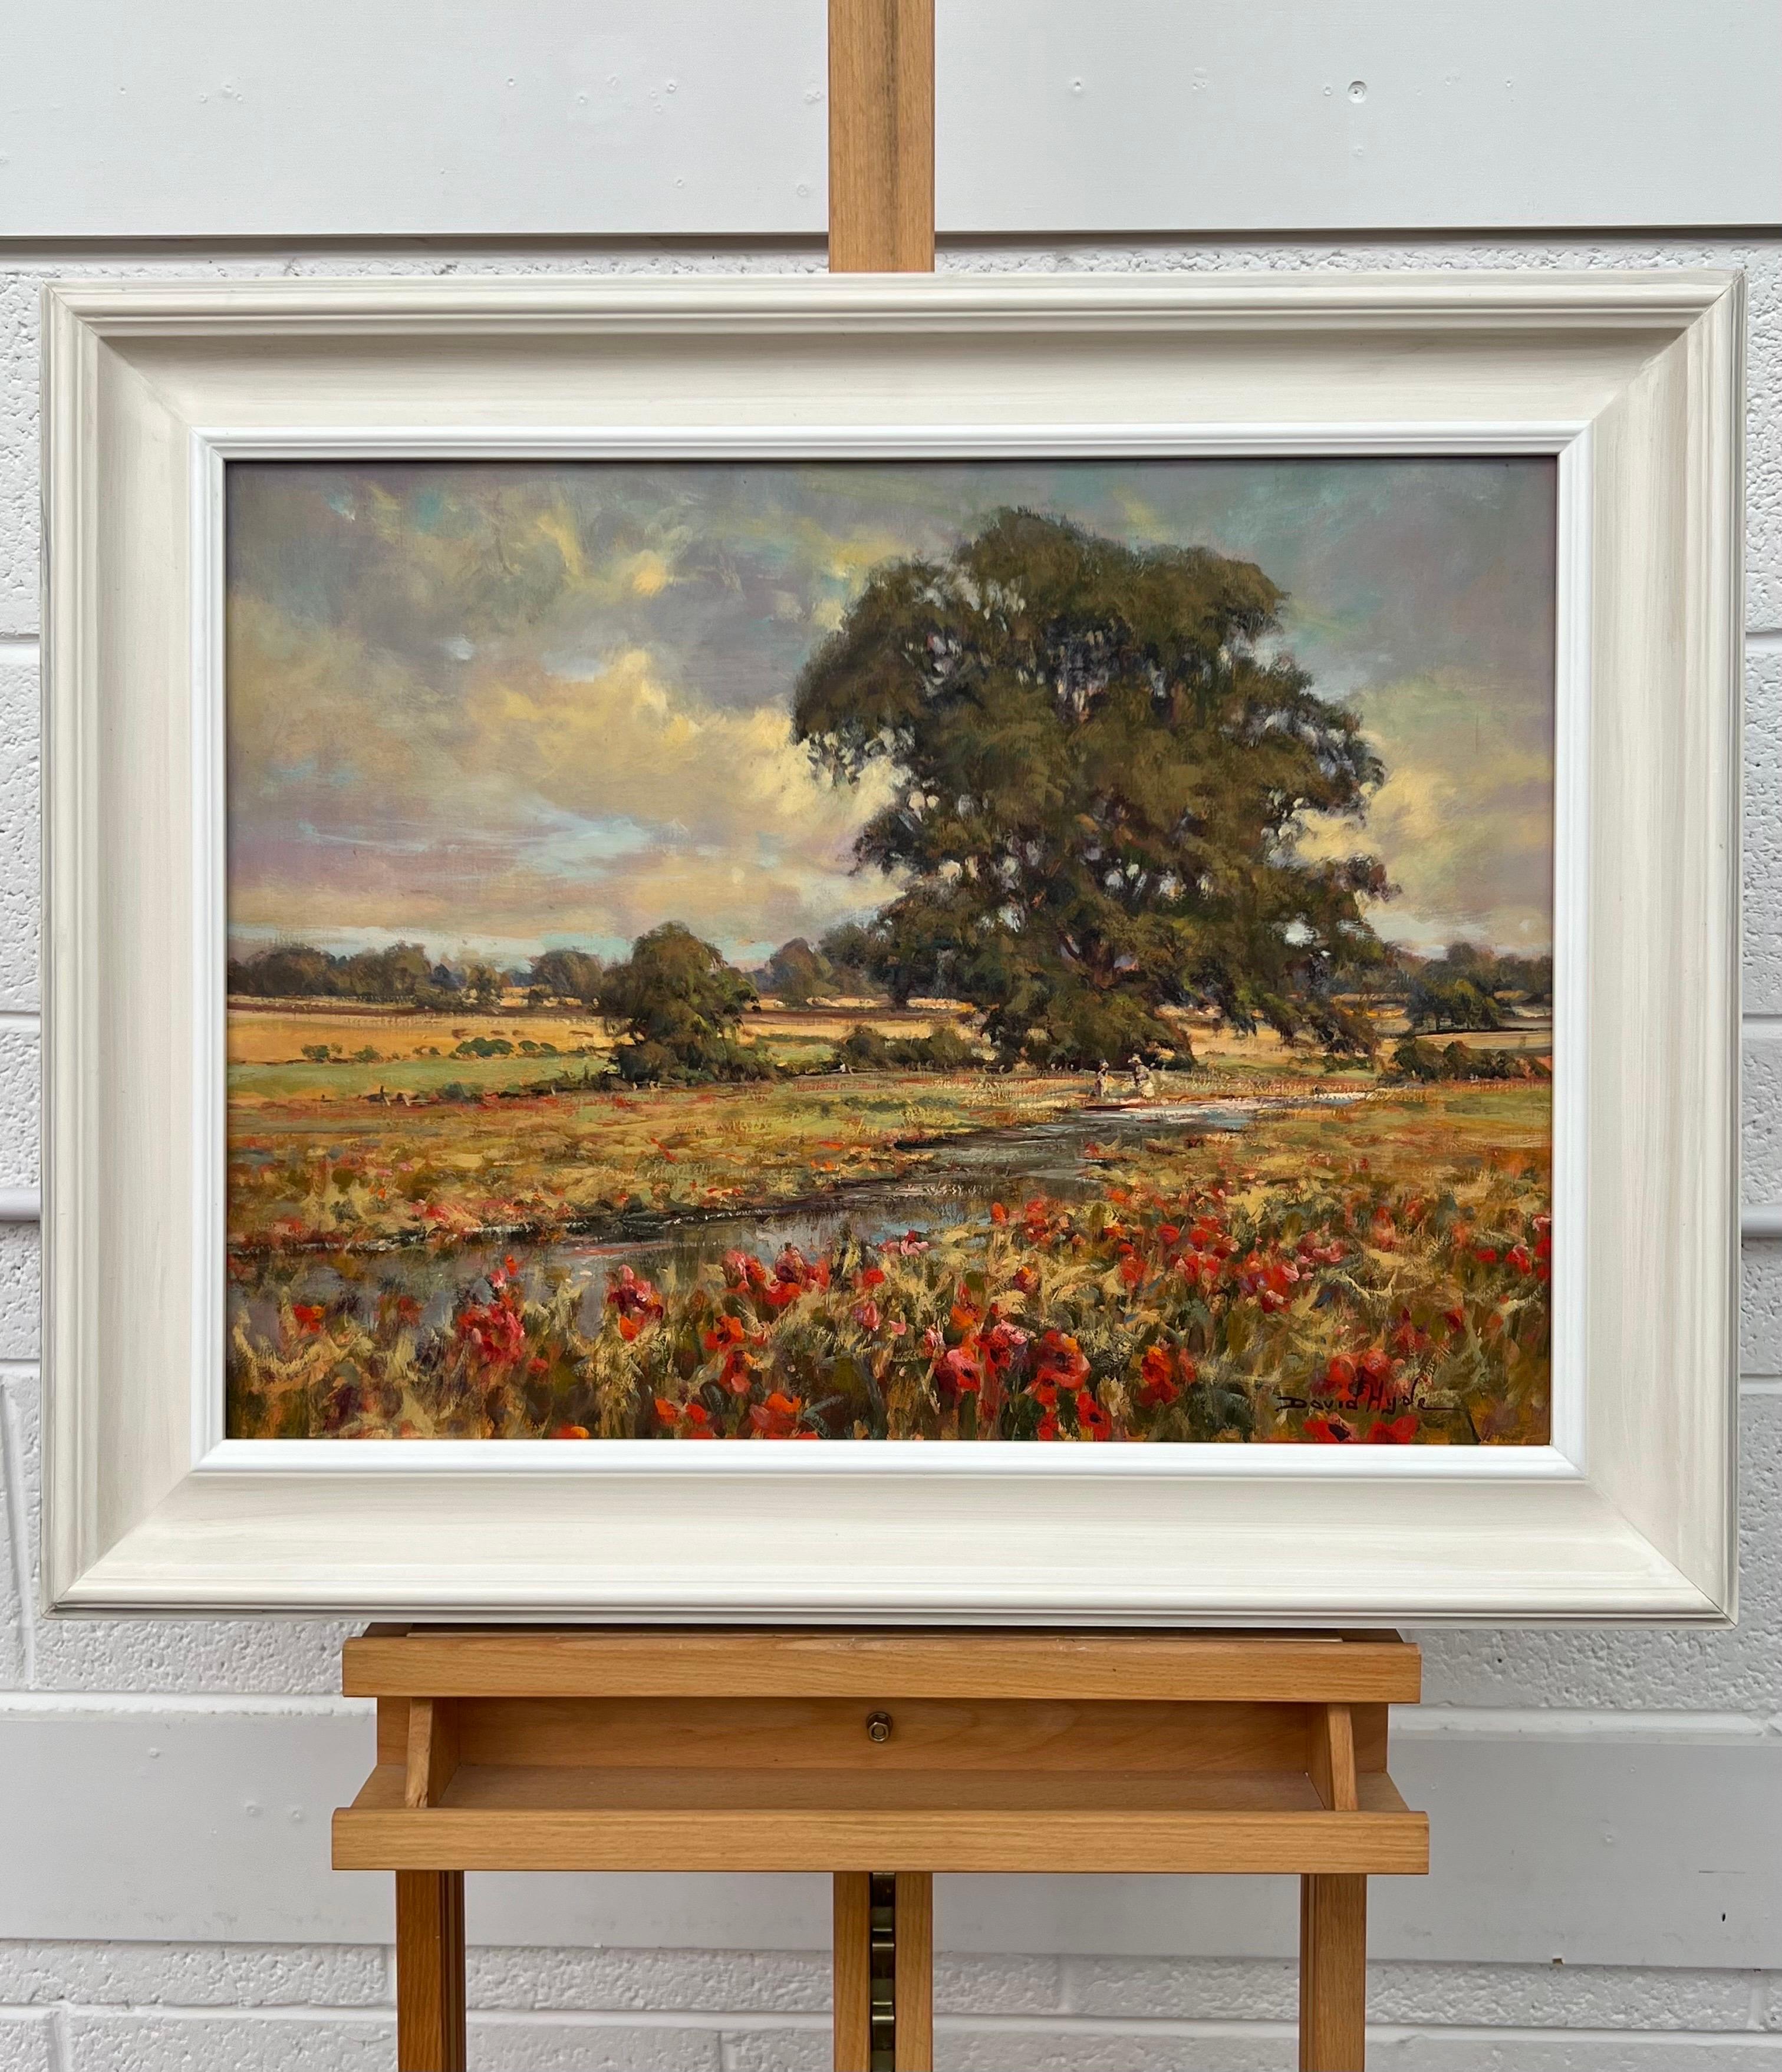 Vintage Impressionist English River Landscape Painting mit wilden roten Blumen und Figuren von britischen Künstler, David Hyde. Das Gemälde zeigt zwei Kinder, die unter einem Baum an einem Fluss in der englischen Landschaft spielen, angrenzend an